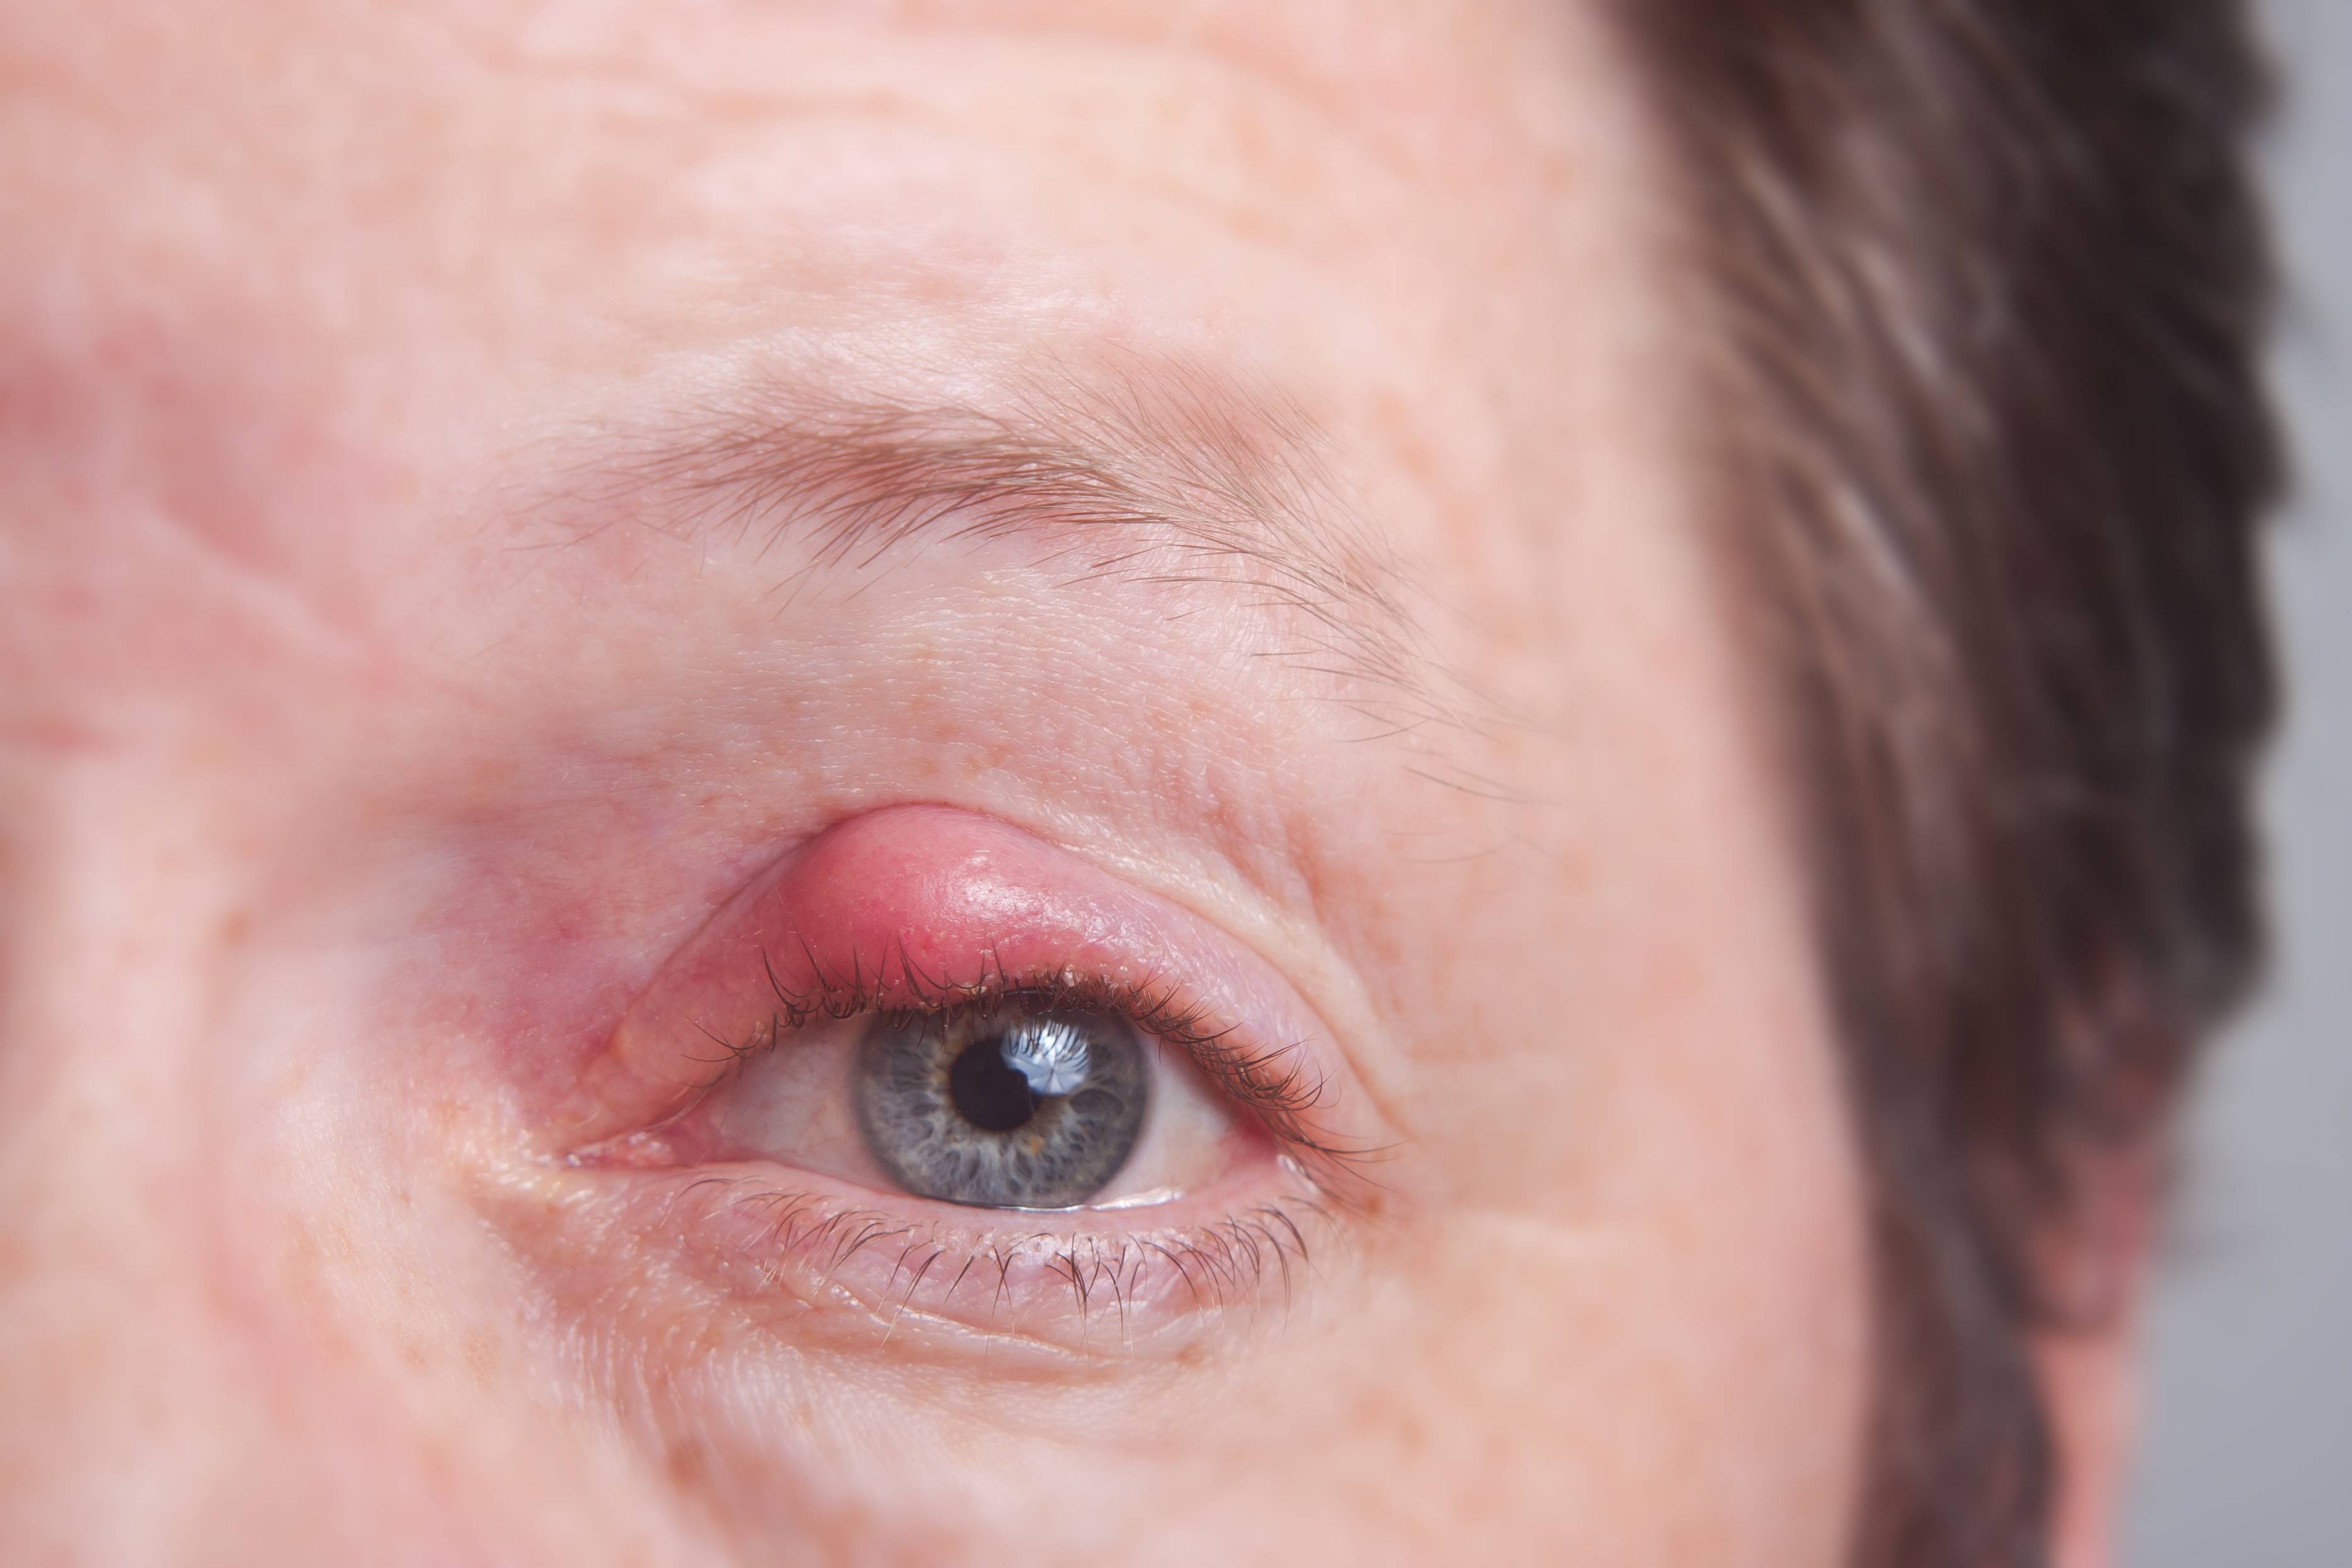 Веки красные: причины и лечение покраснения вокруг глаз, внутри у взрослого и ребенка, мази от гиперемии, сопутствующие симптомы (зуд, припухлость, жжение)